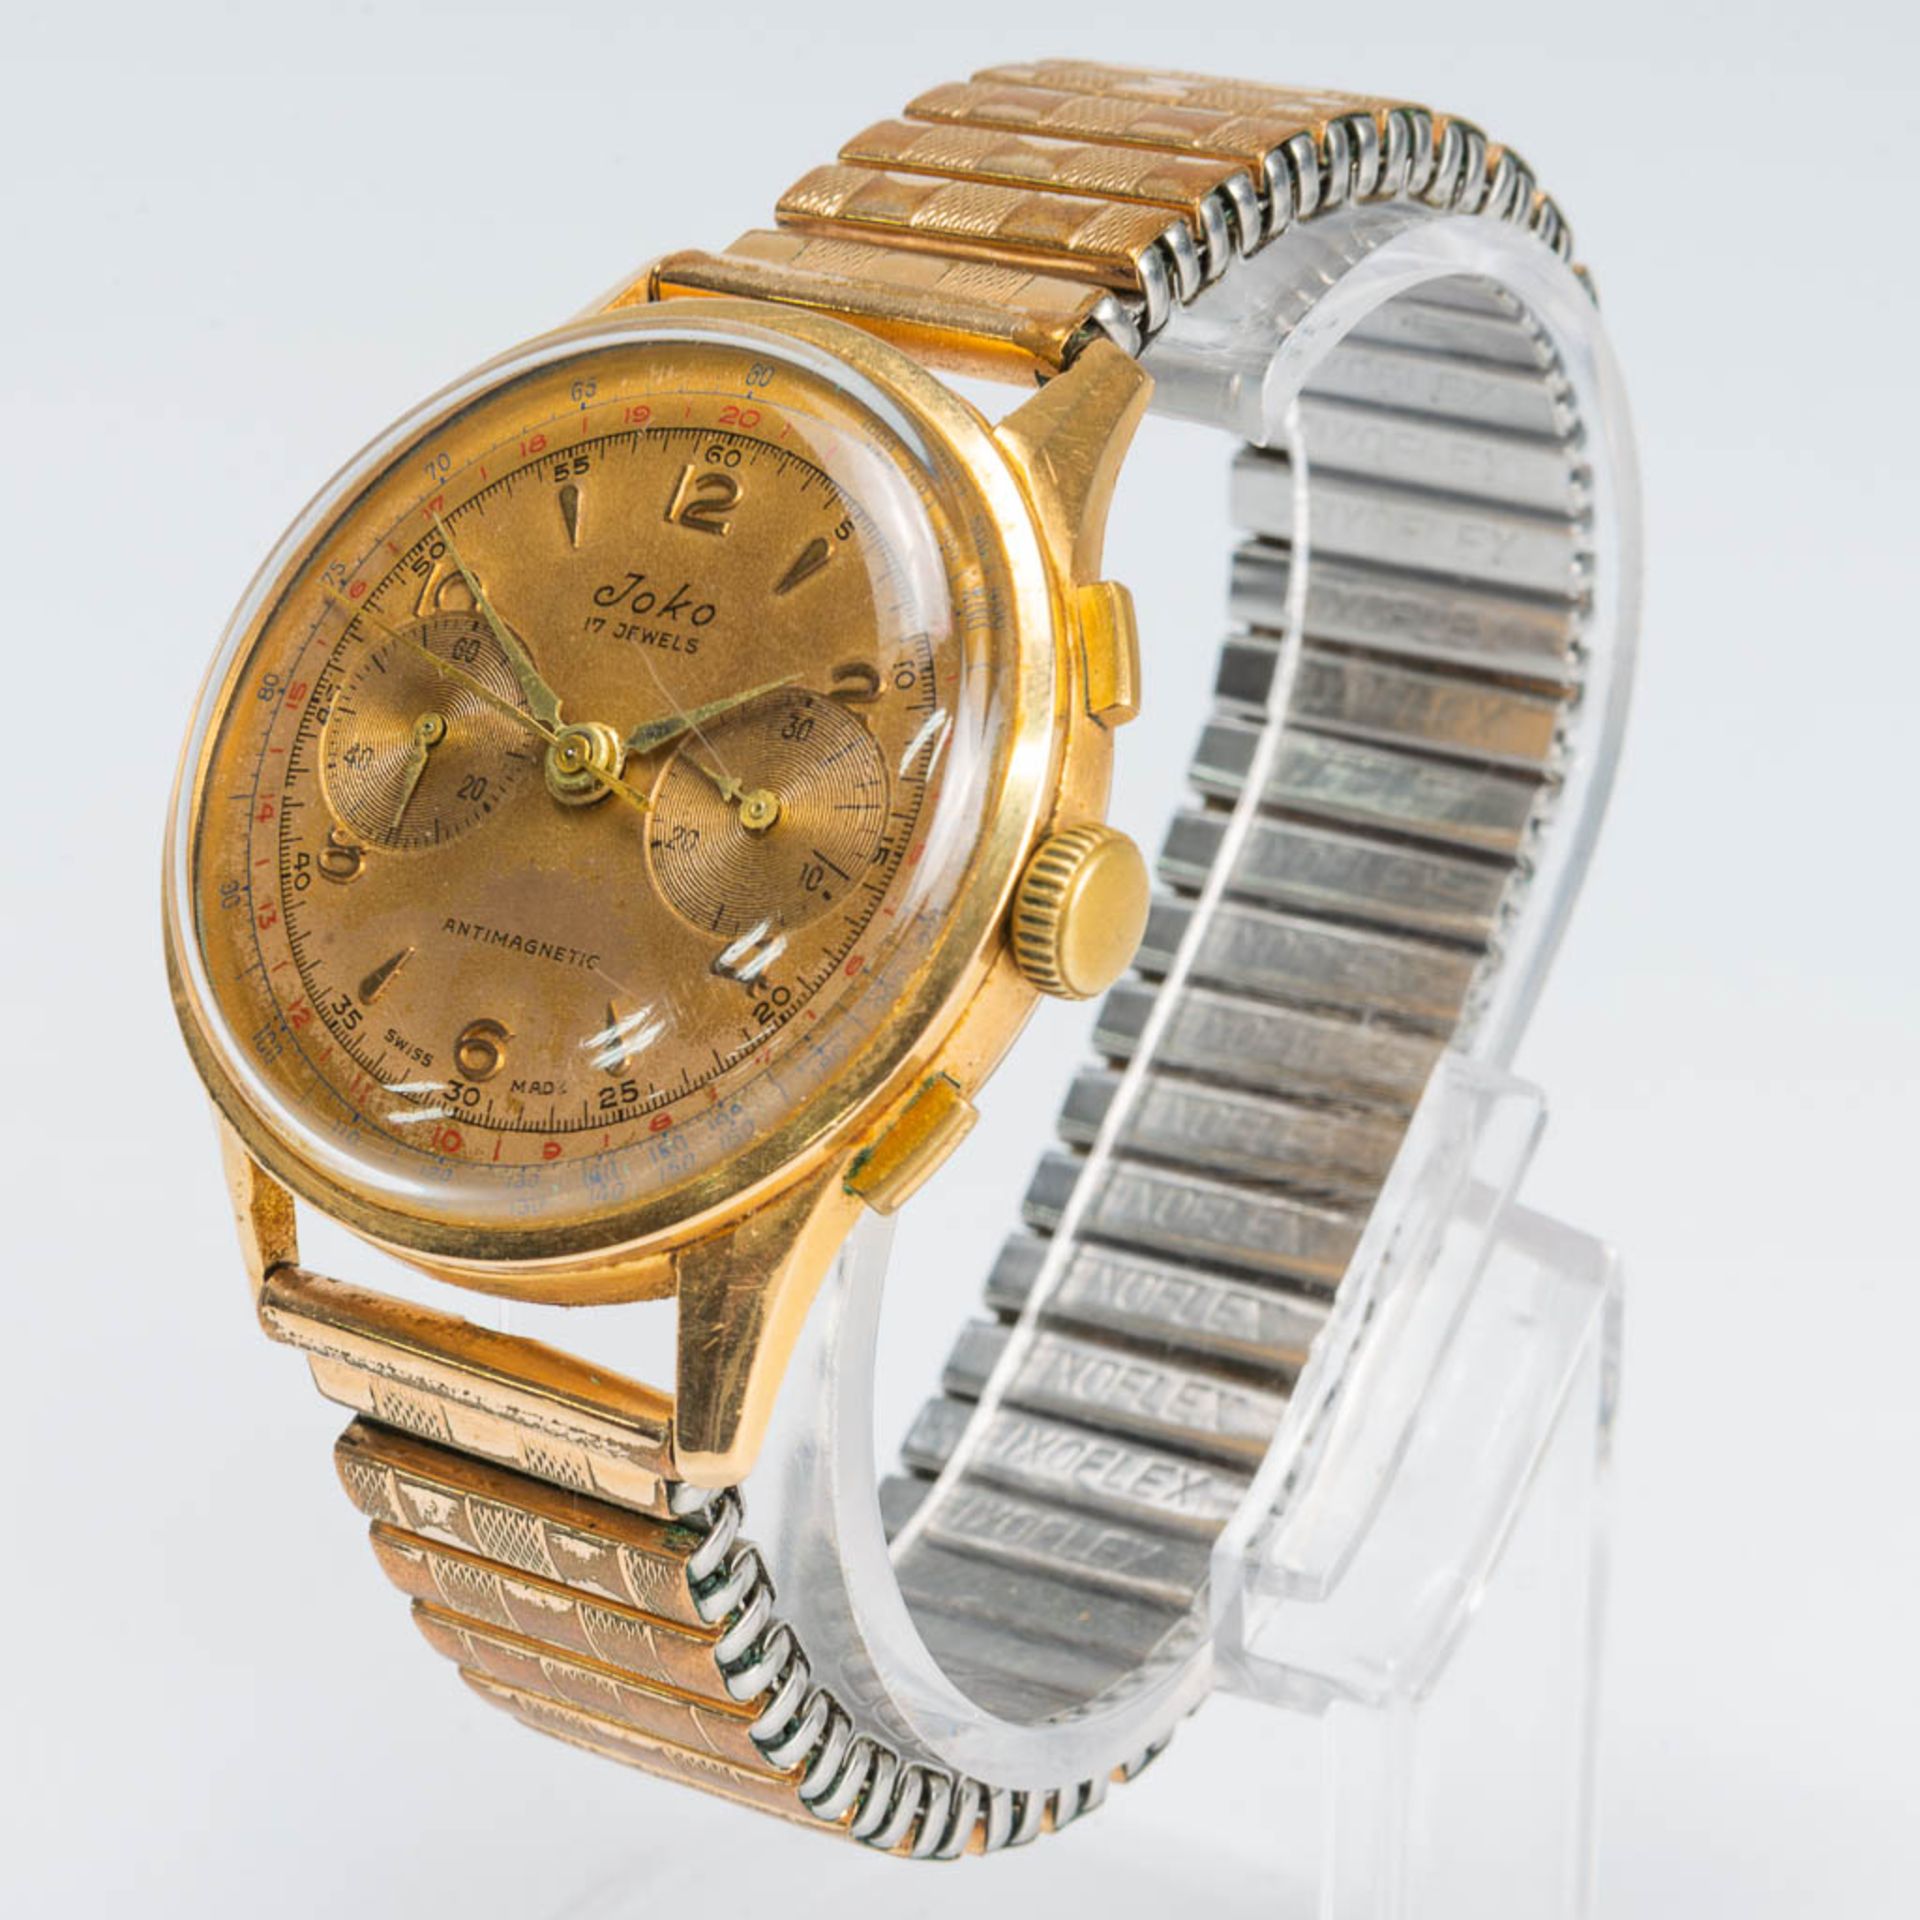 A Chronograph suisse mens's wristwatch marked Joco with an 18 karat gold case. Chronograph in workin - Bild 2 aus 6